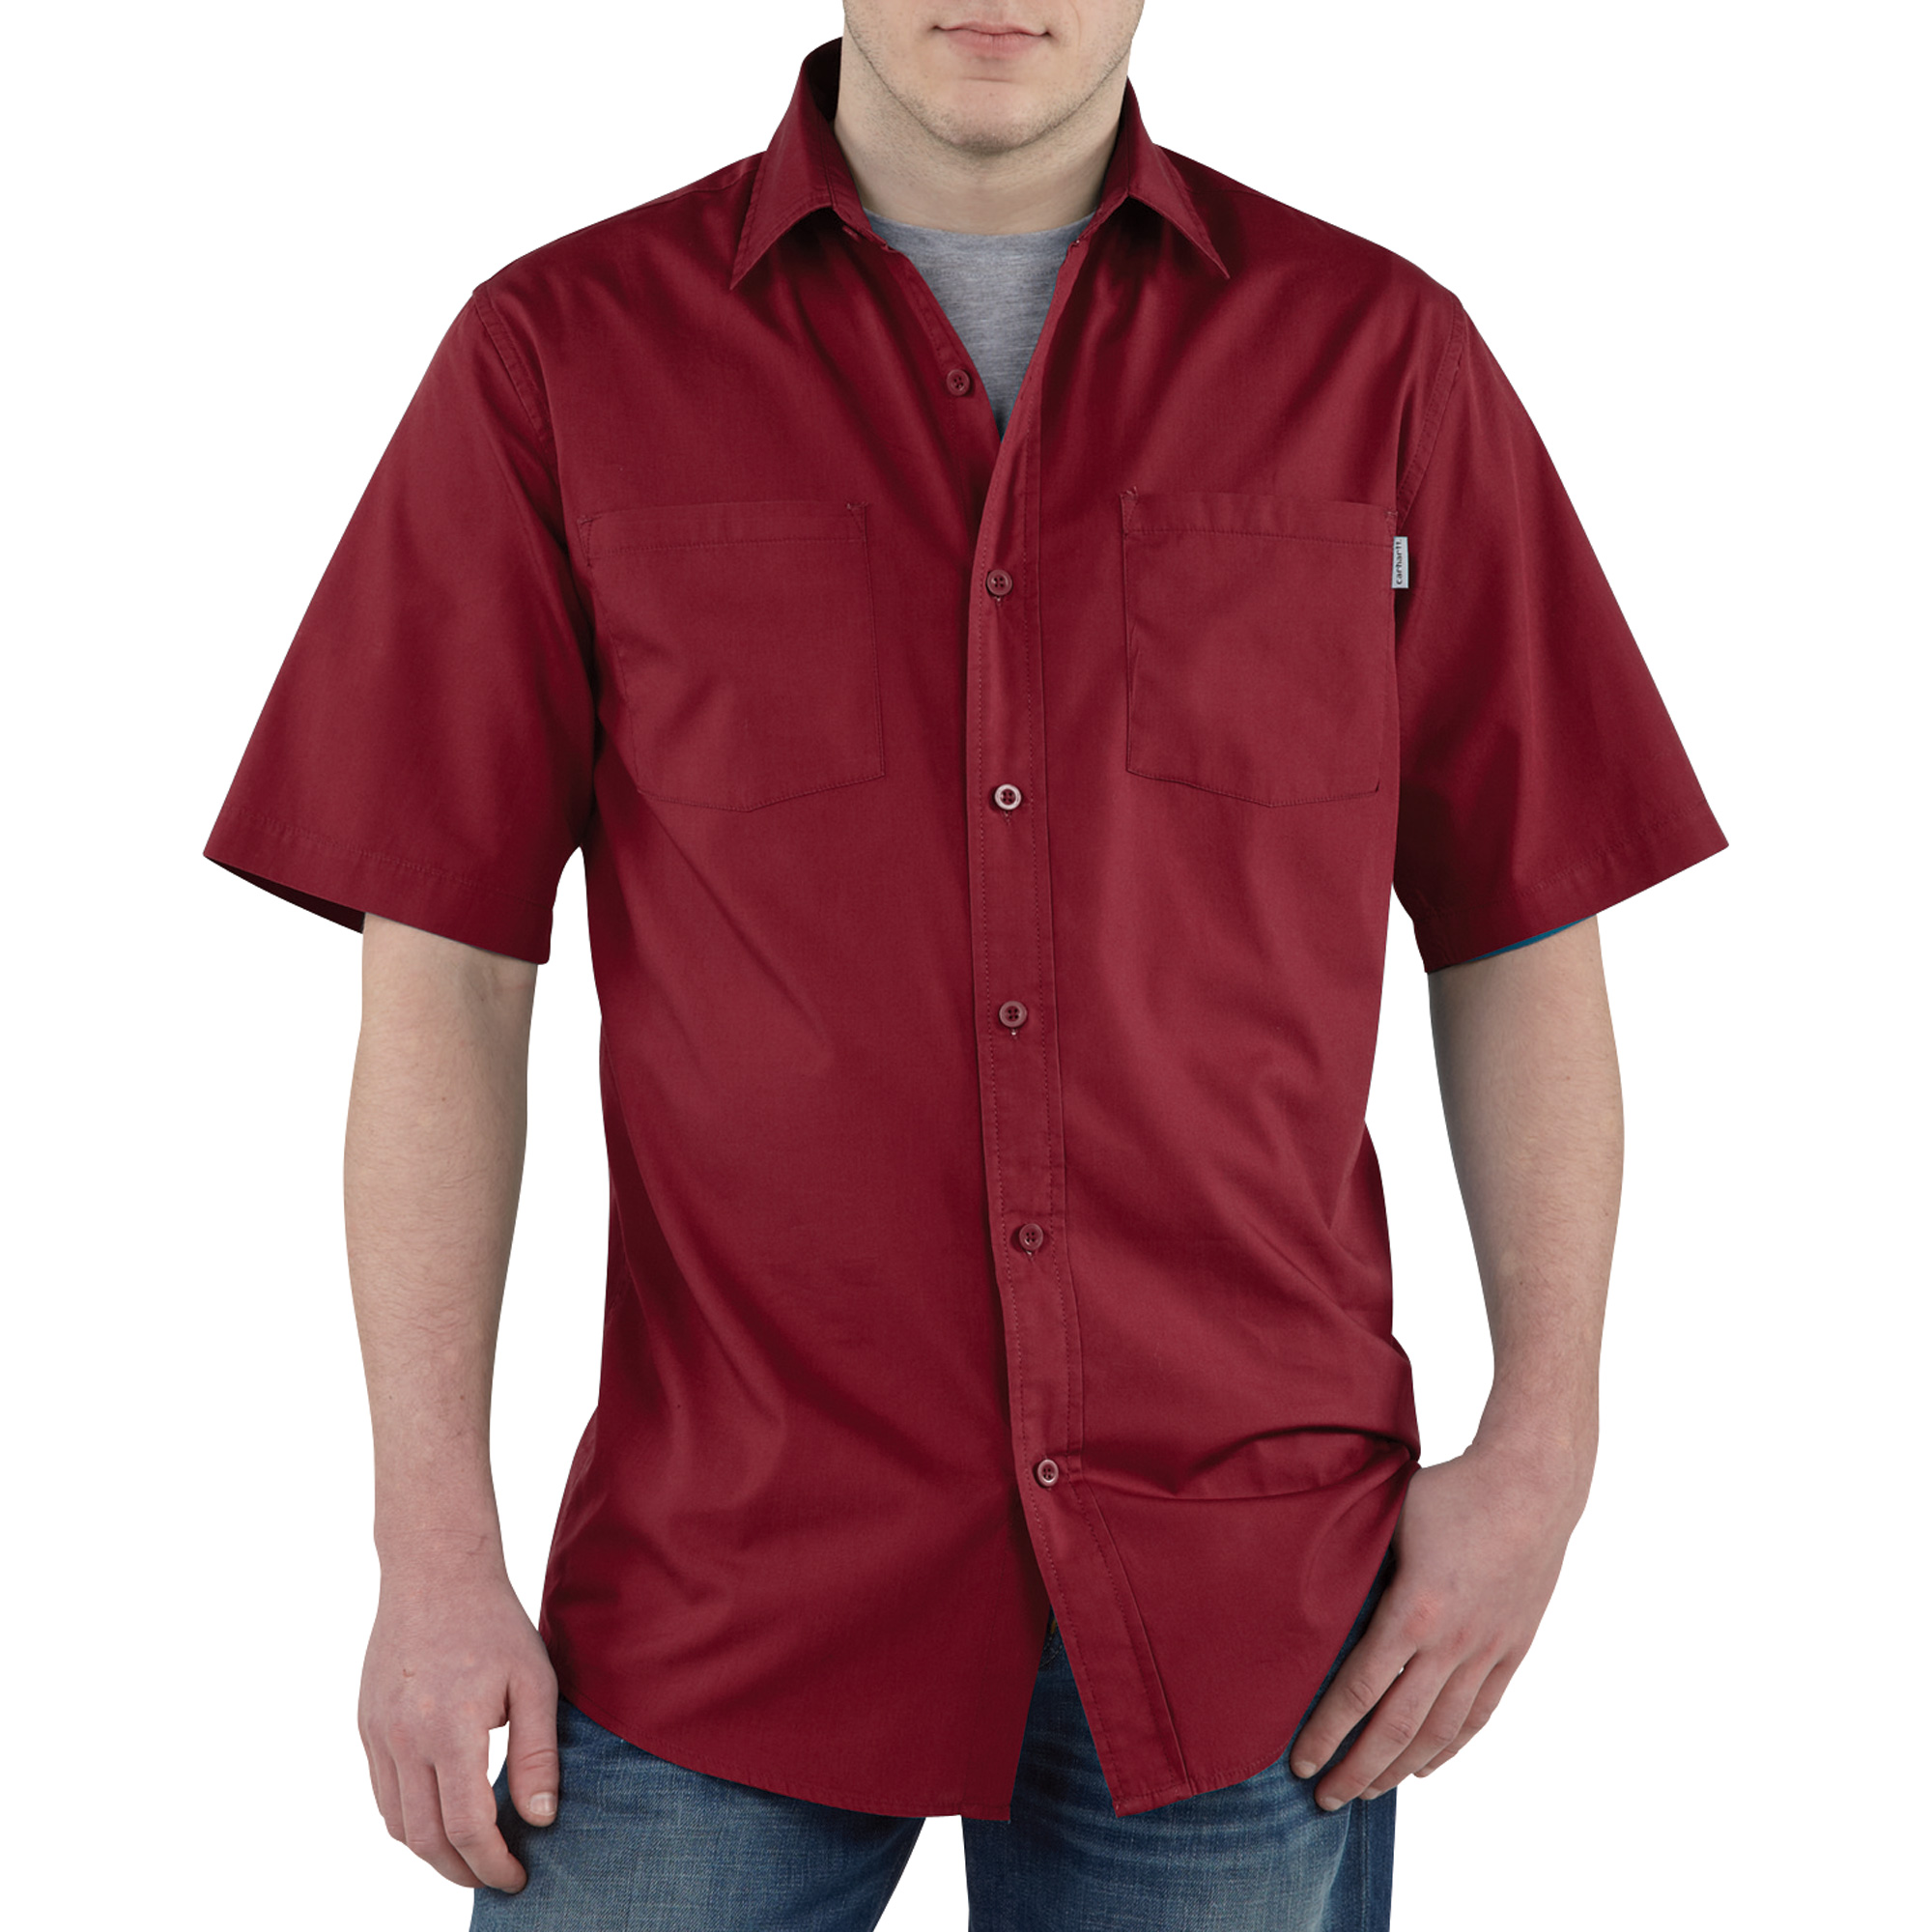 Carhartt Short Sleeve Lightweight Woven Shirt â Bordeaux, Medium, Model S268